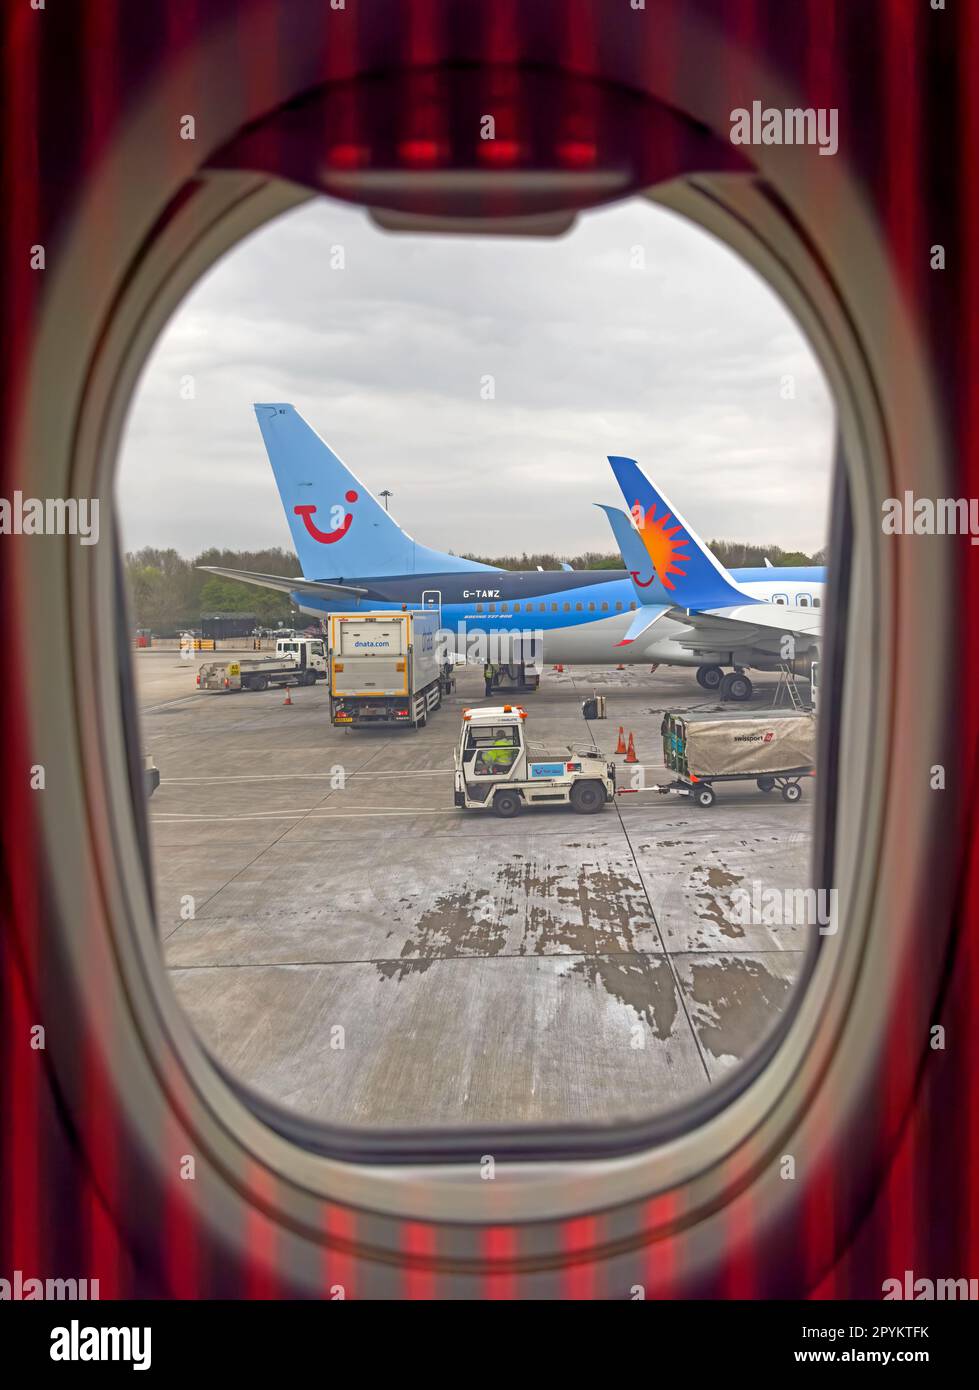 Bodega de equipaje de avion por dentro imágenes alta resolución - Alamy